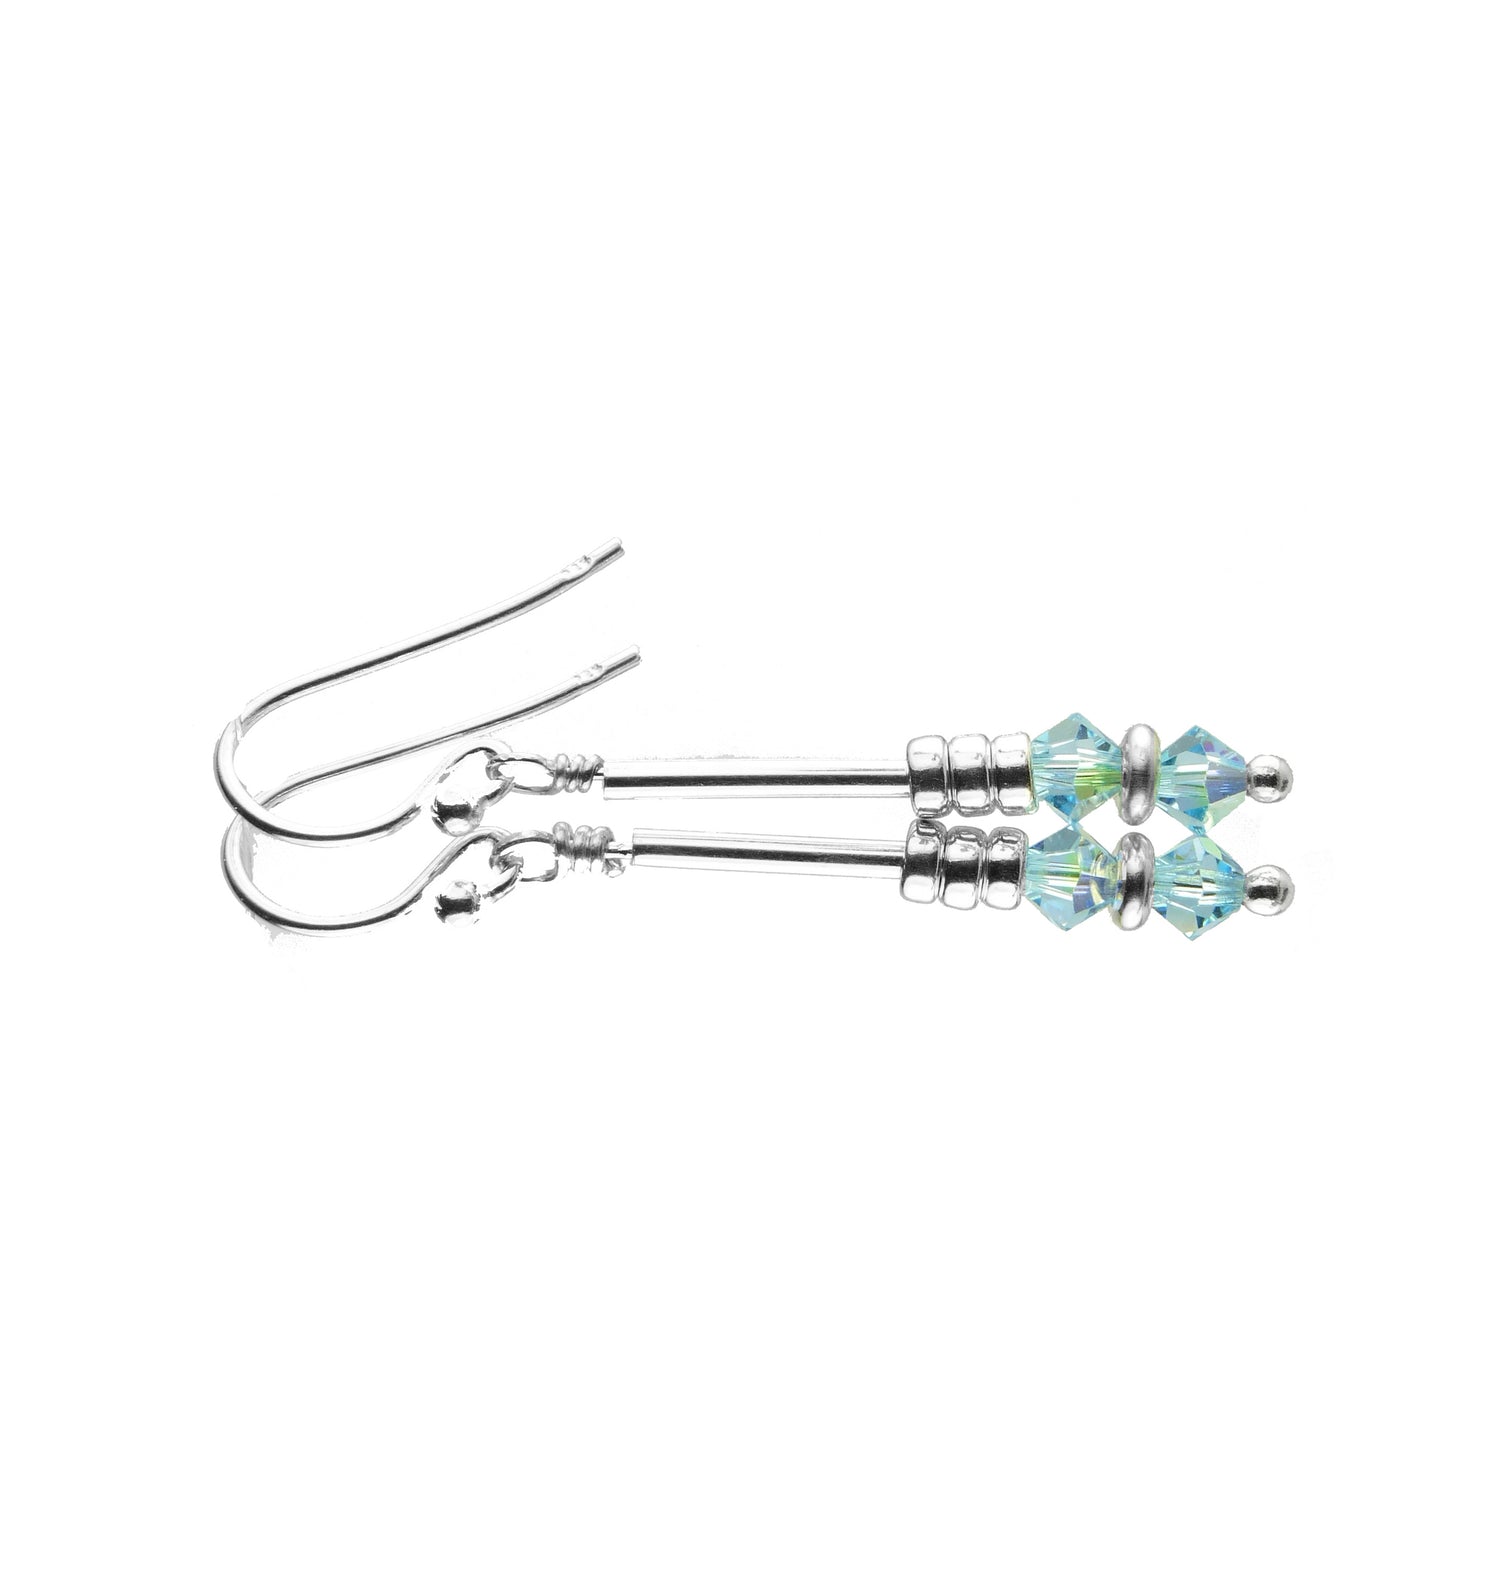 Aquamarine Earrings, March Birthstone Earrings, Blue Minimalist Dangle Earrings, Crystal Jewelry Elements